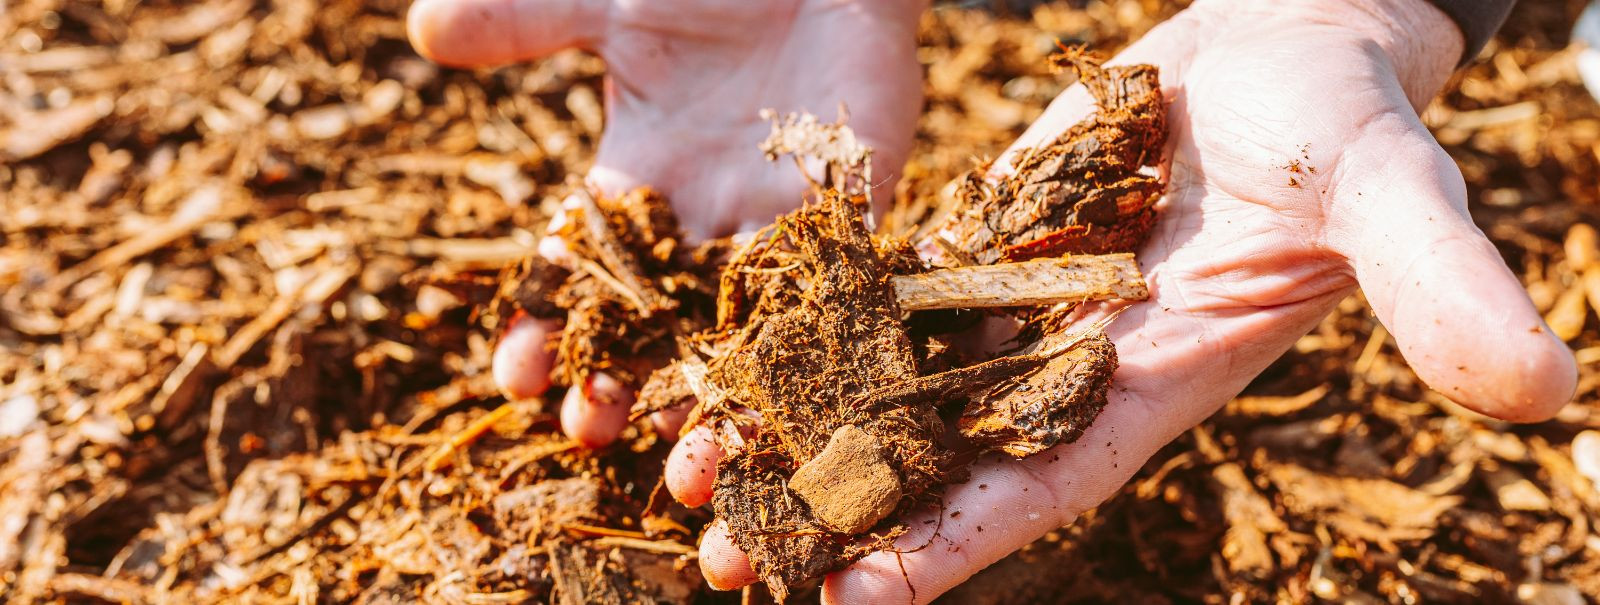 Multš on materjalikiht, mida kantakse mulla pinnale. Selle eesmärk on säilitada niiskust, parandada mulla viljakust ja tervist, vähendada umbrohu kasvu ning suu